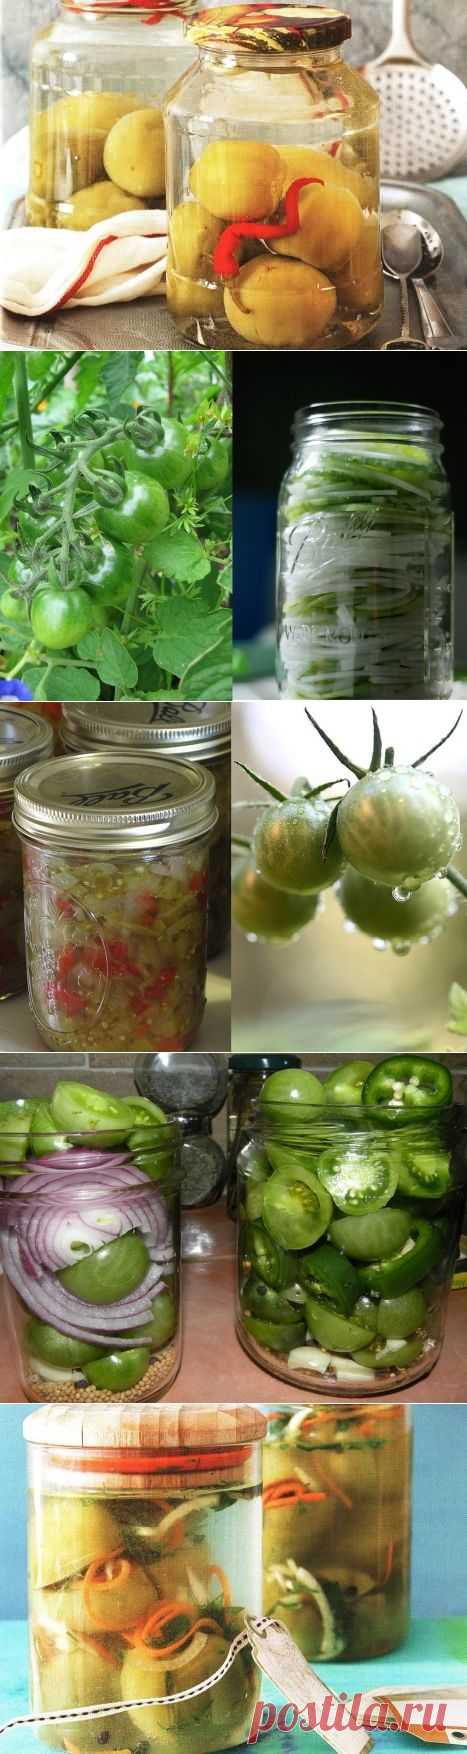 Подборка оригинальных рецептов заготовок из зеленых помидоров на зиму.